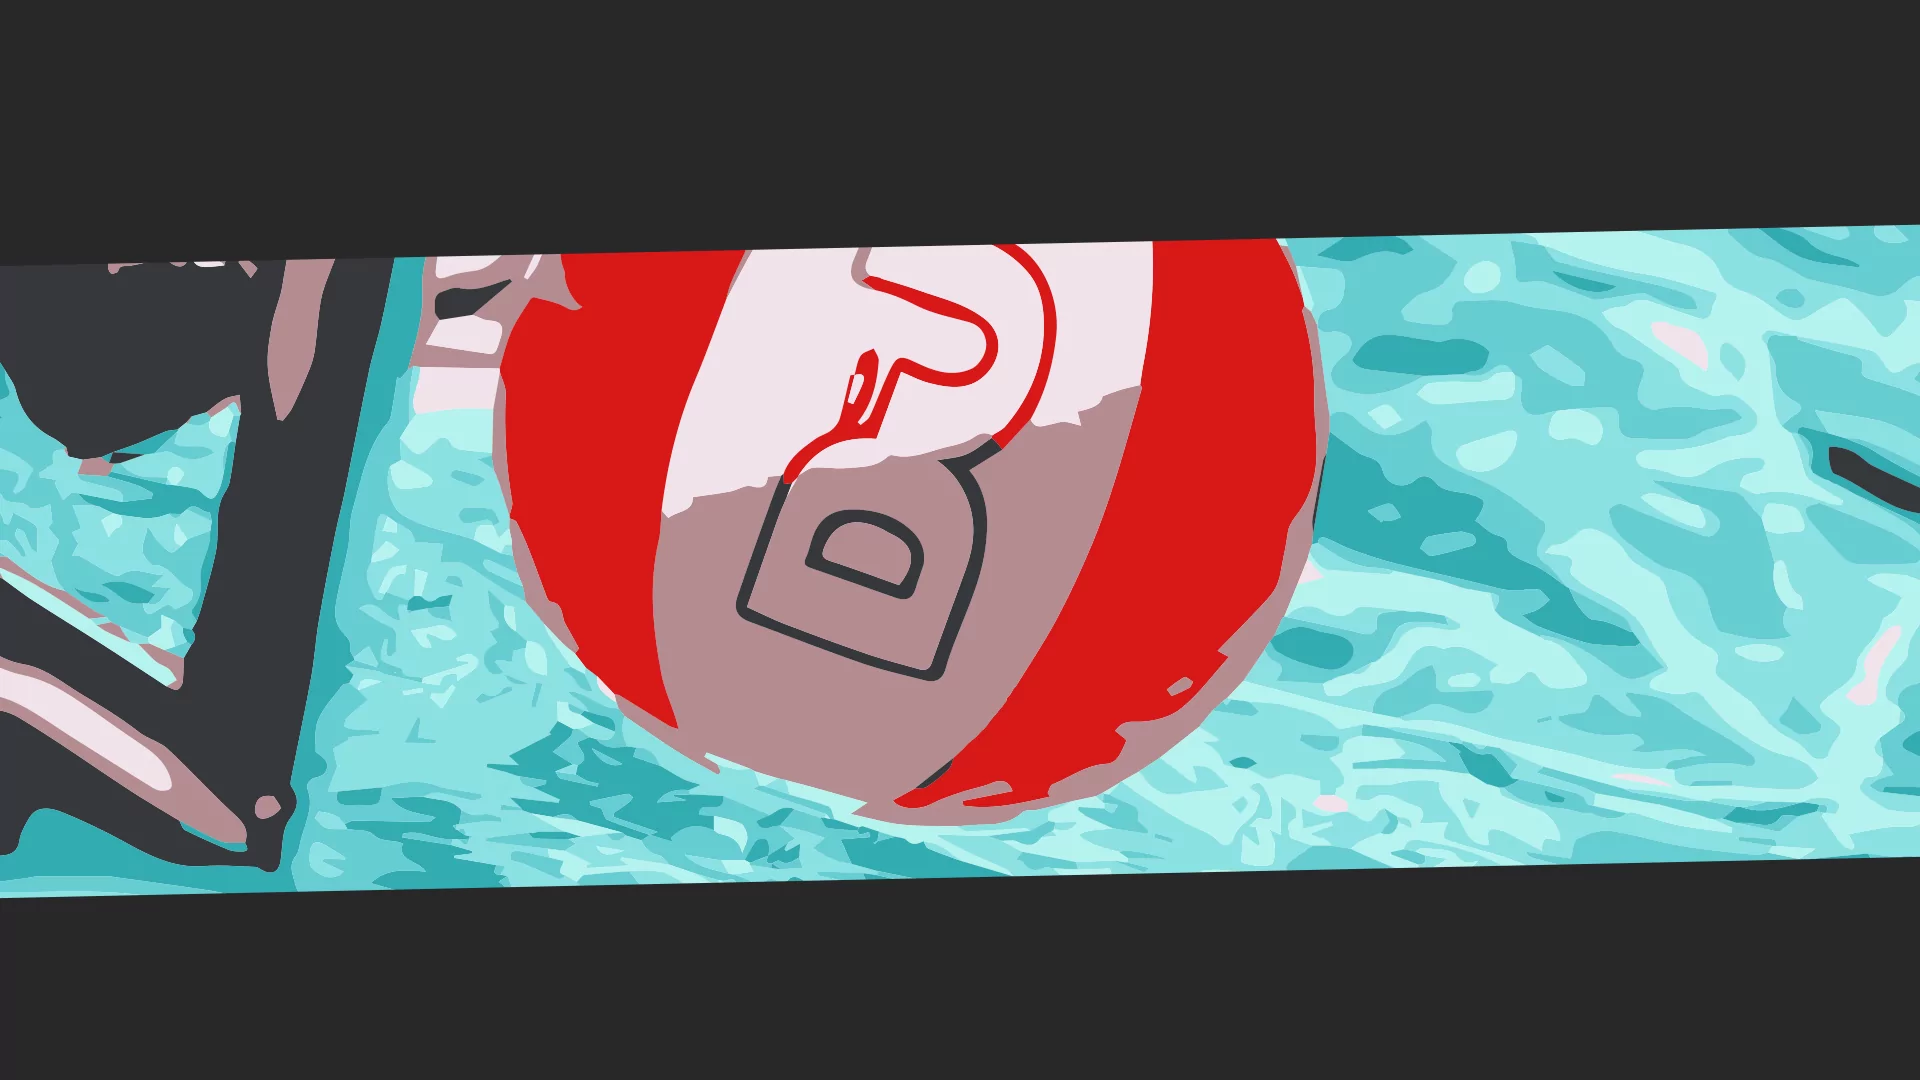 DJ Mag beach ball in a pool